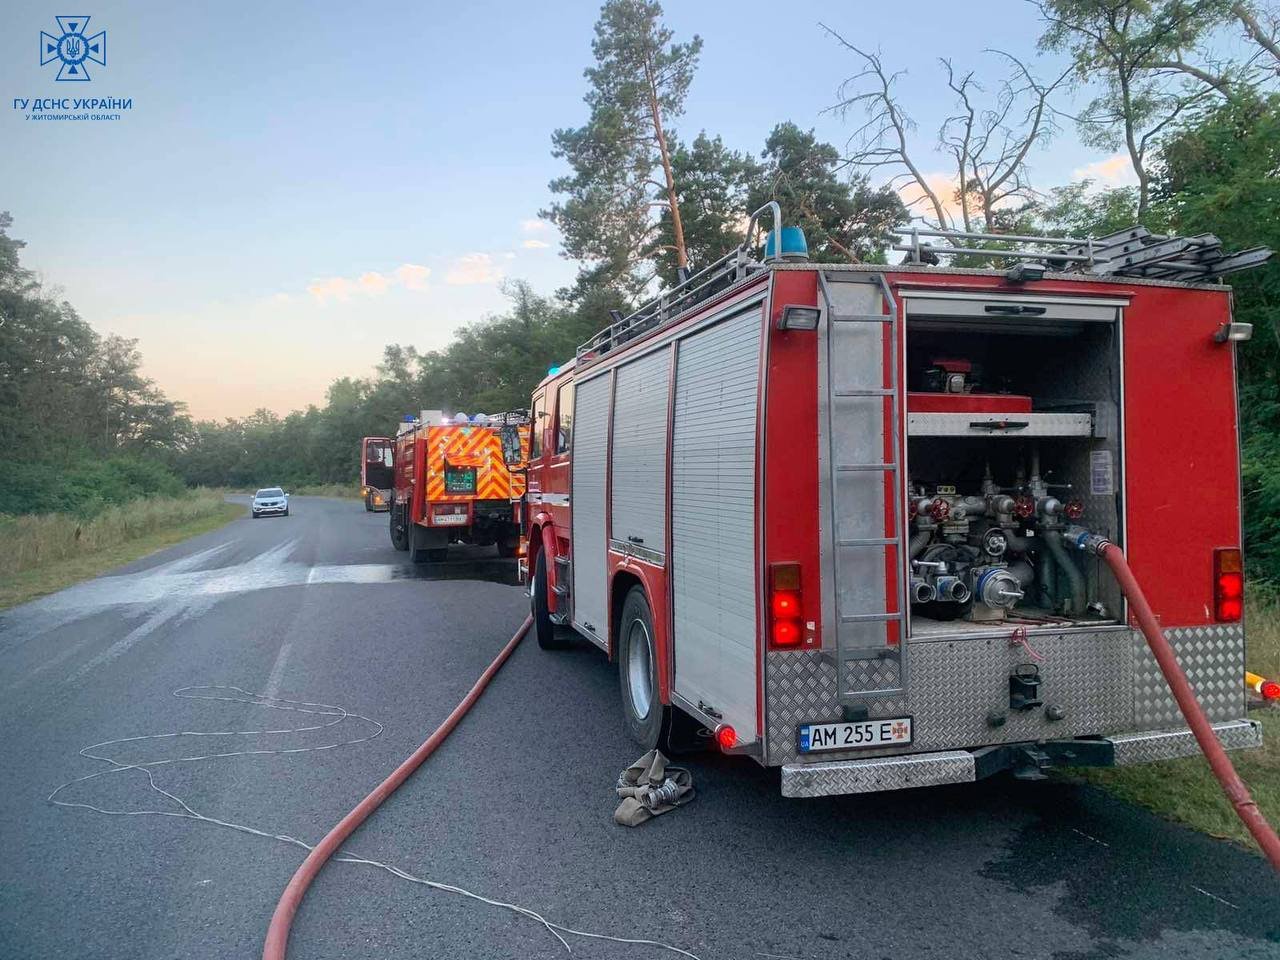 Житомирщина: рятувальники ліквідували пожежу причепу вантажівки, в якій знаходилося 22 т палива для твердопаливного котла